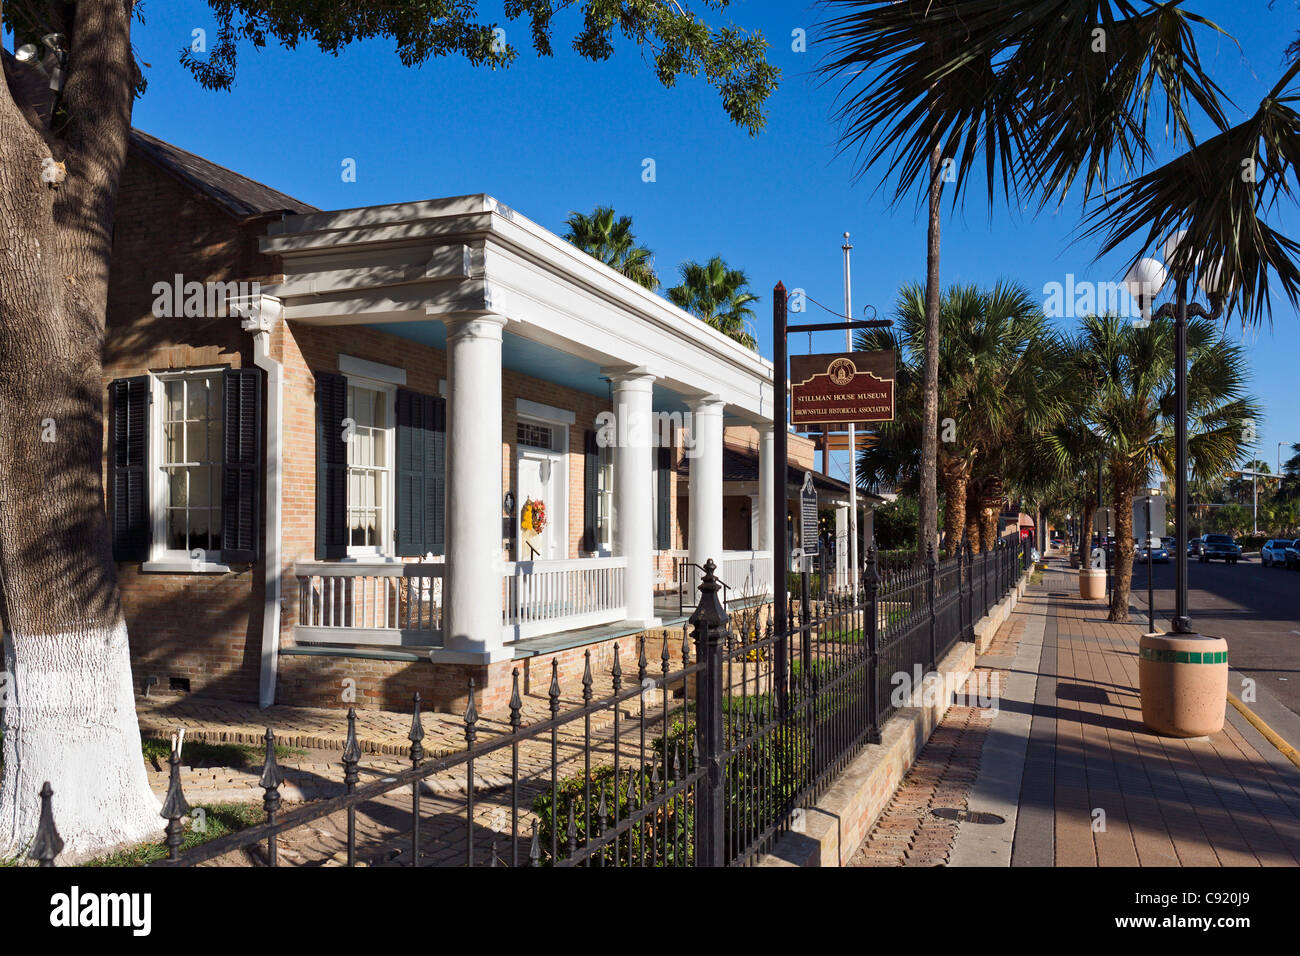 The Stillman House Museum on E Washington Street, Brownsville, Texas, USA Stock Photo